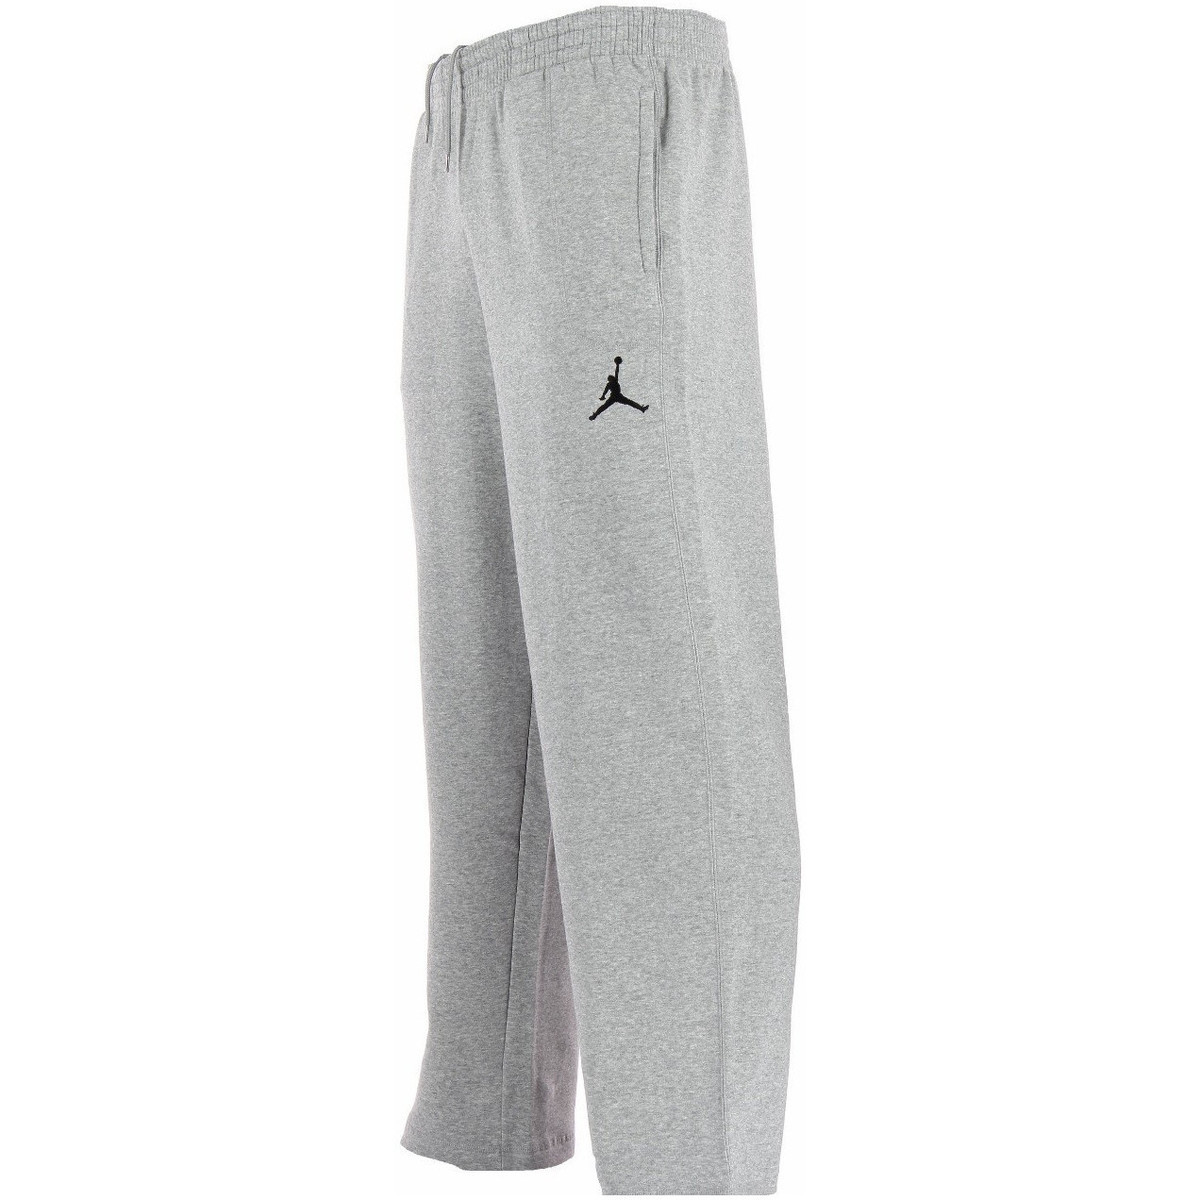 Nike Gris Jordan 23/7 Fleece - 547662-063 IyOUoAkM